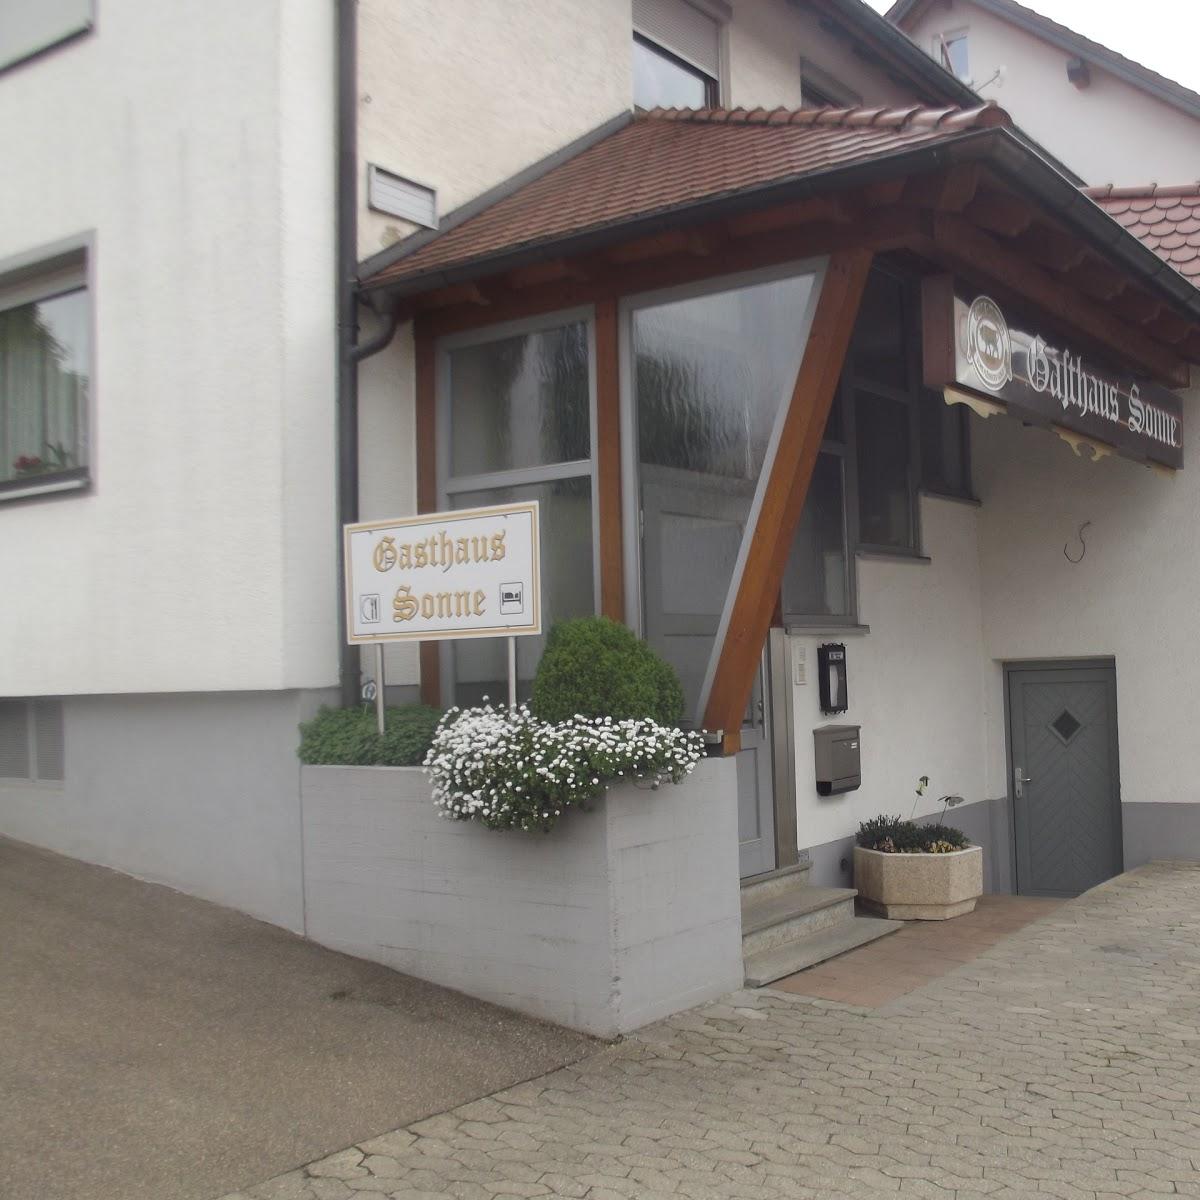 Restaurant "Gasthaus Stadt Reutte" in  Langenau